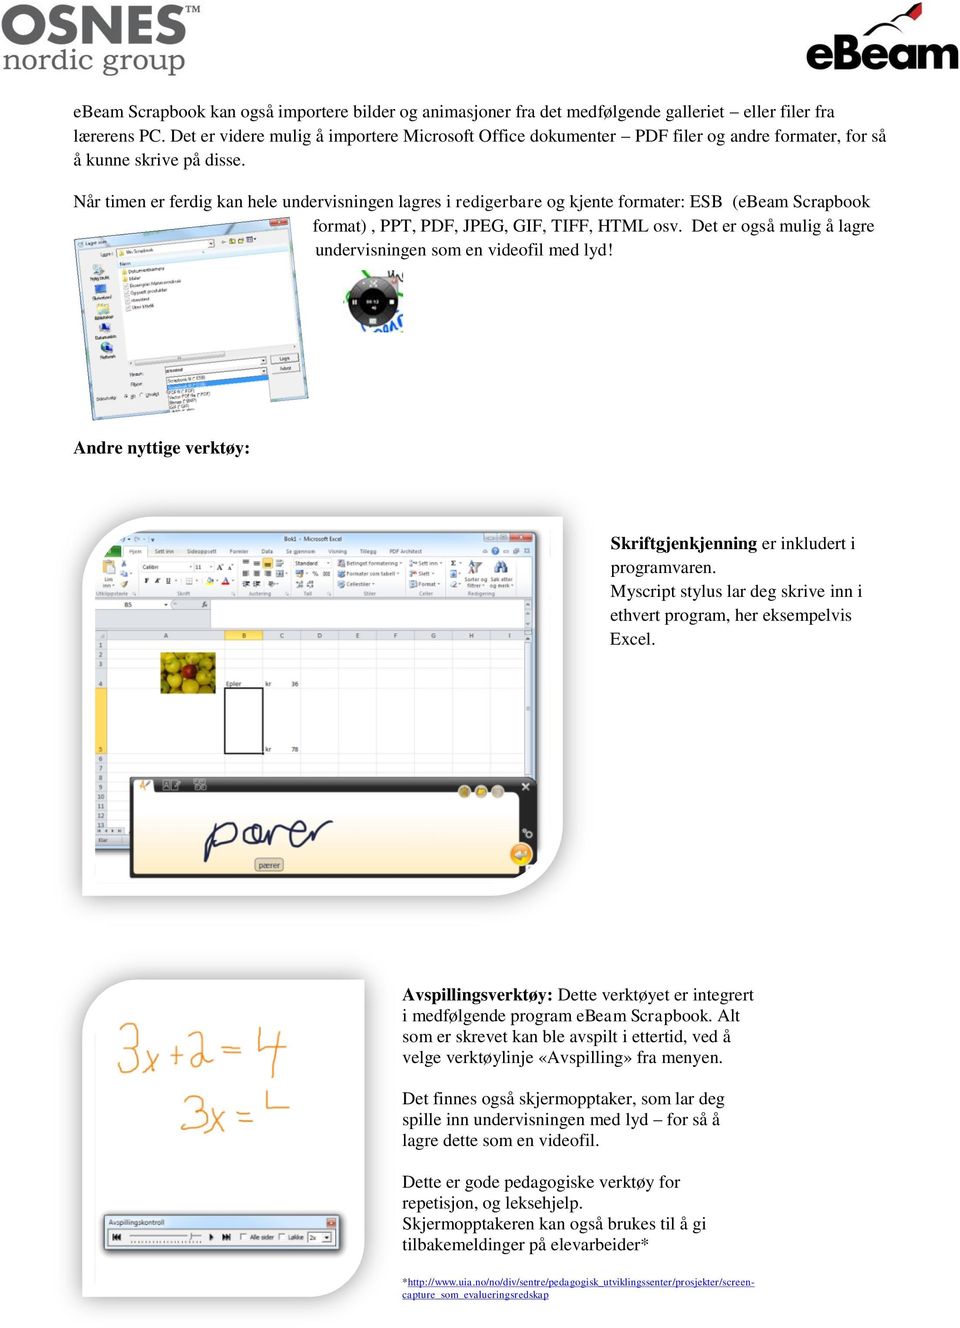 Når timen er ferdig kan hele undervisningen lagres i redigerbare og kjente formater: ESB (ebeam Scrapbook format), PPT, PDF, JPEG, GIF, TIFF, HTML osv.